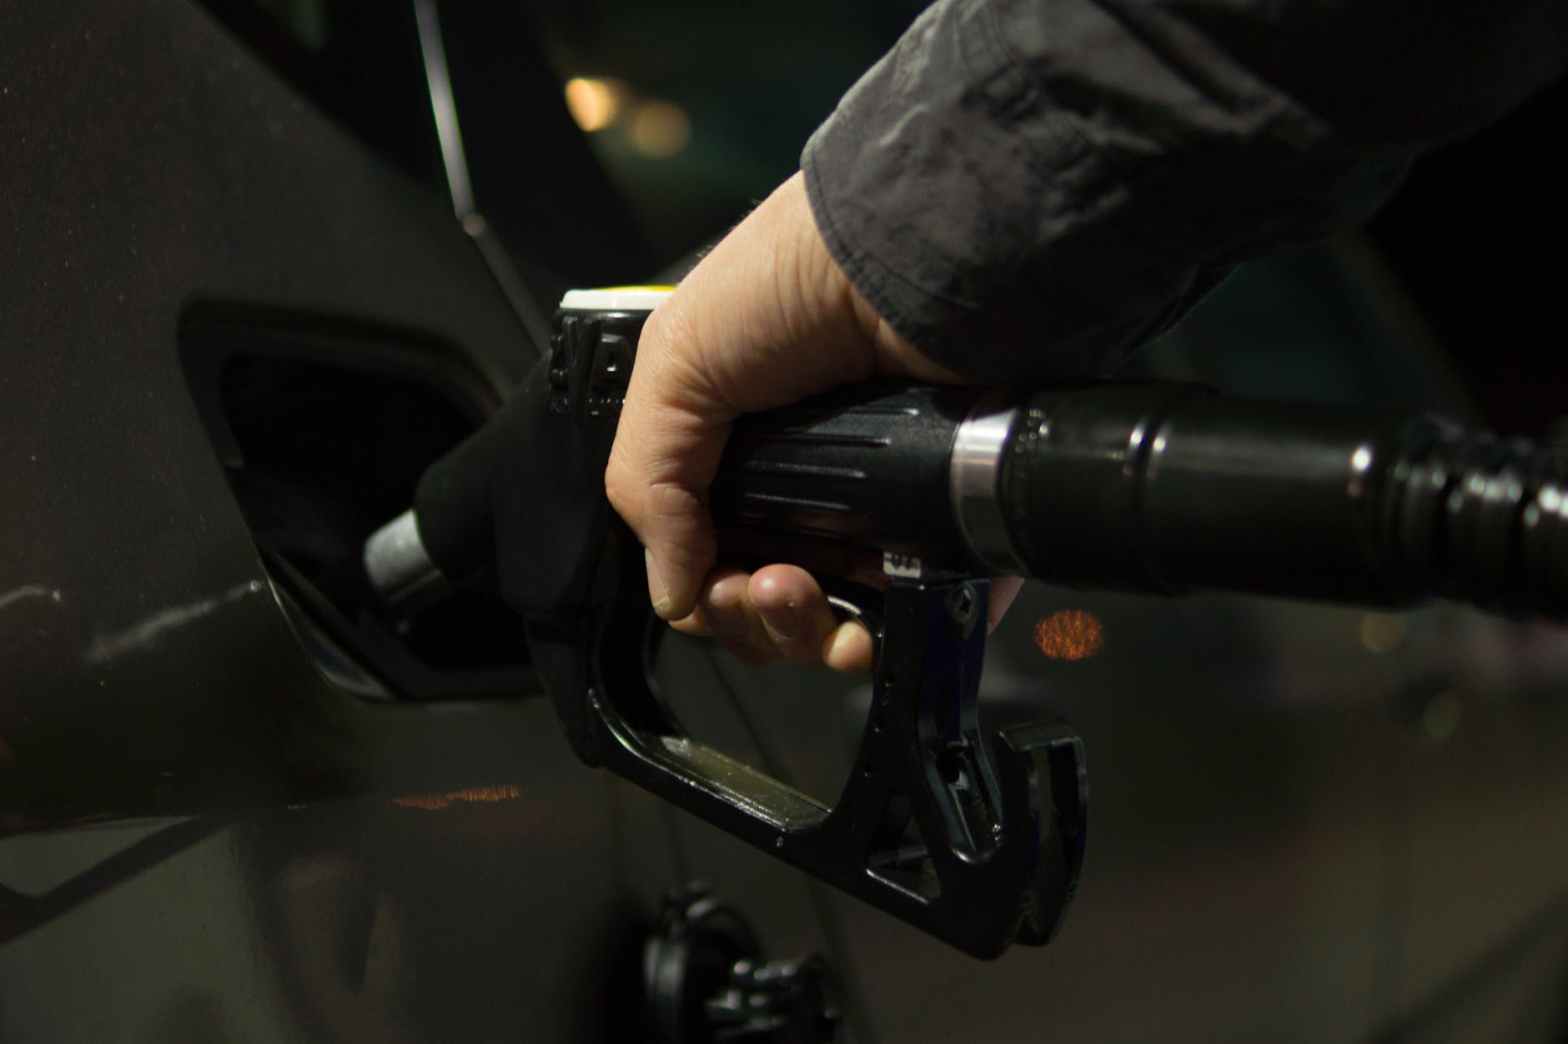 Se a gasolina sobe tudo aumenta, más será que isso ajuda as pessoas a usarem melhor seu carro?